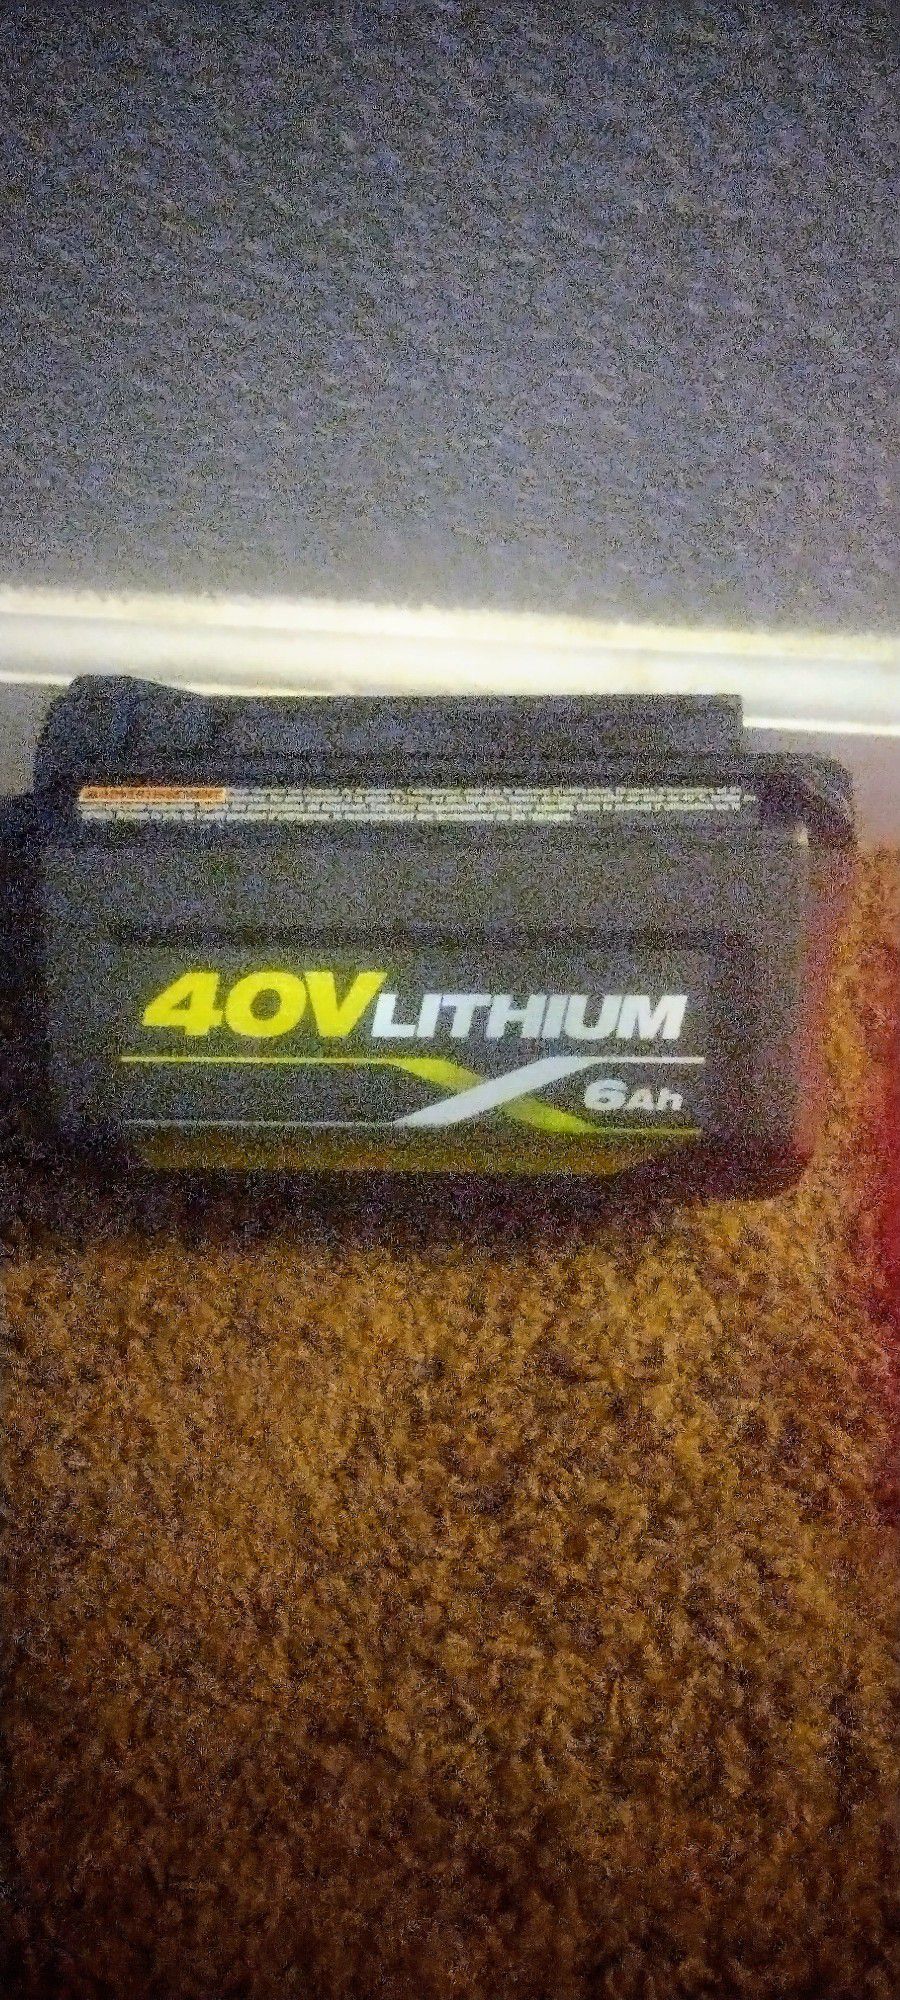 Ryobi 40v Lithium Battery 